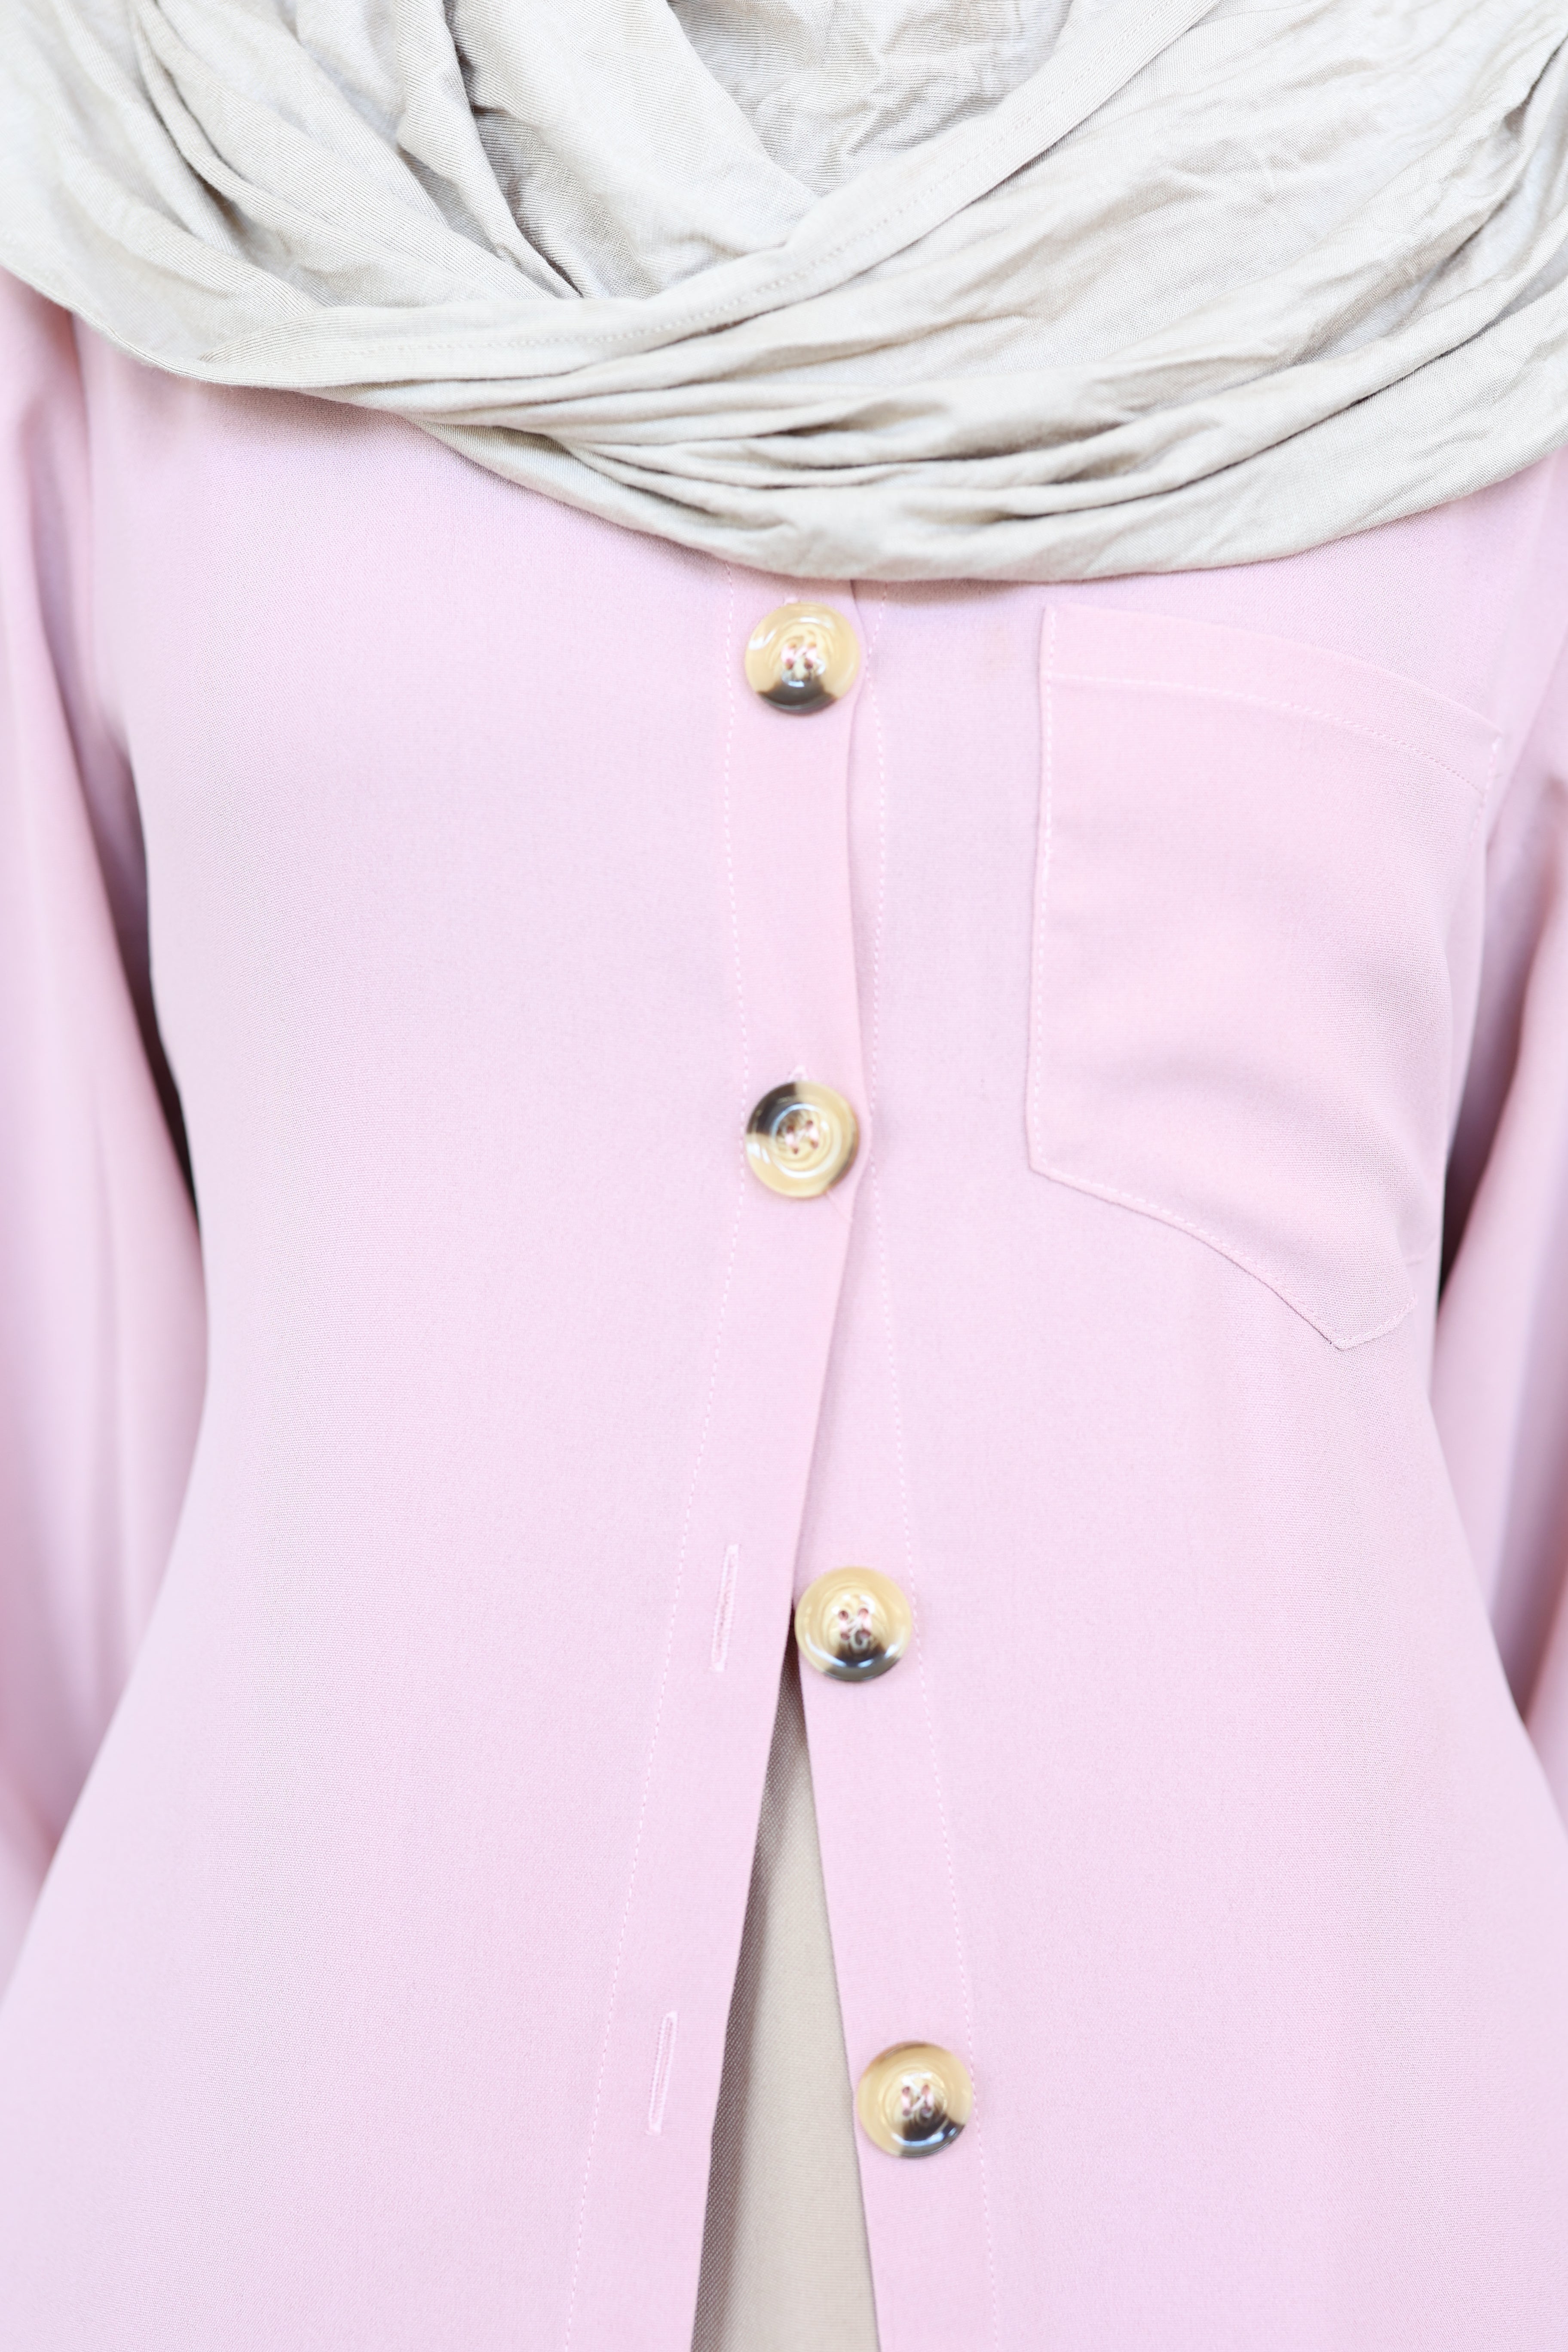 Casual Button Shirt Dress (Pink)